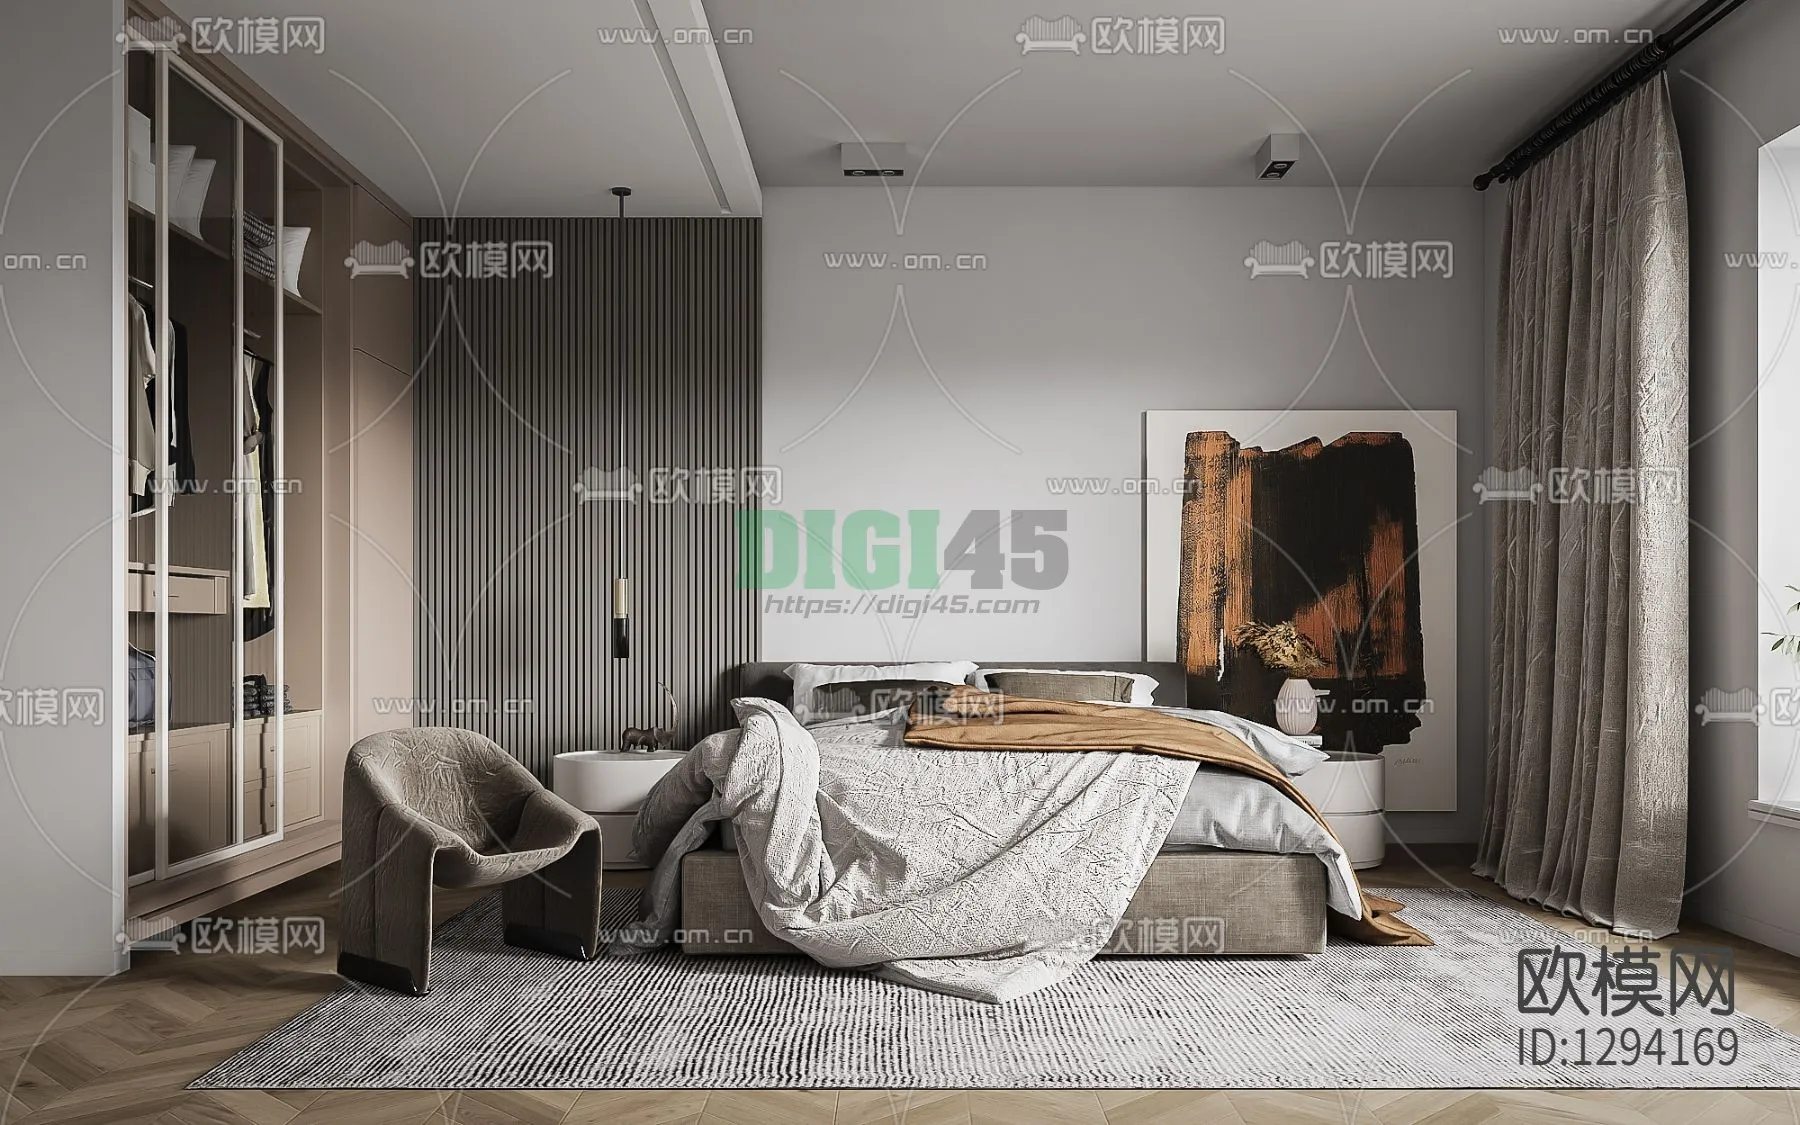 Bedroom 3D Scenes – 1134